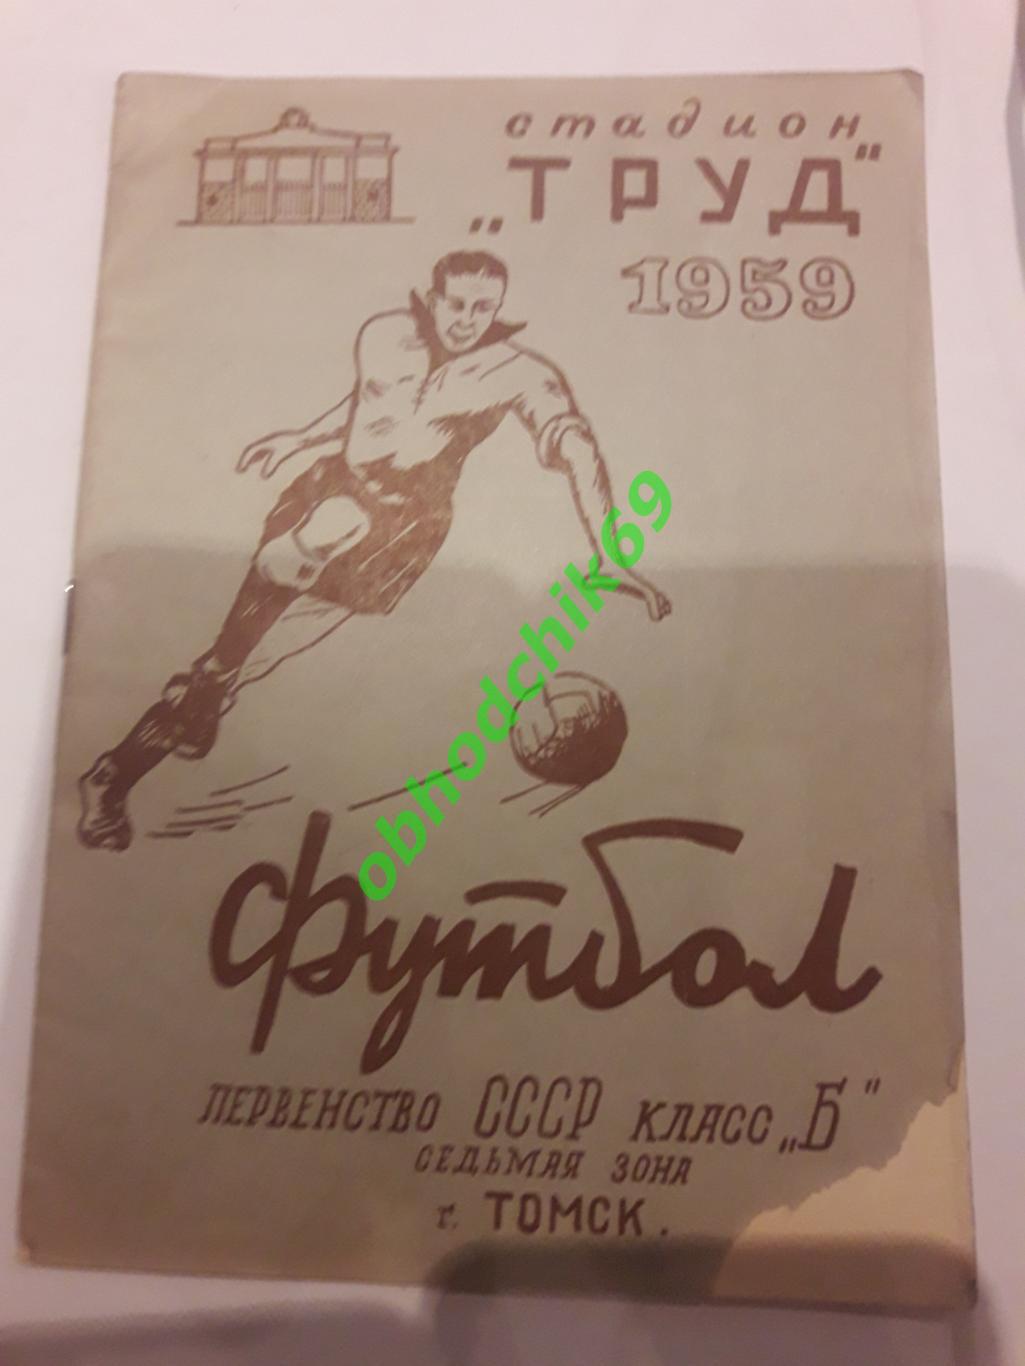 Футбол Календарь-справочник 1959 Томск класс Б 7-я зона